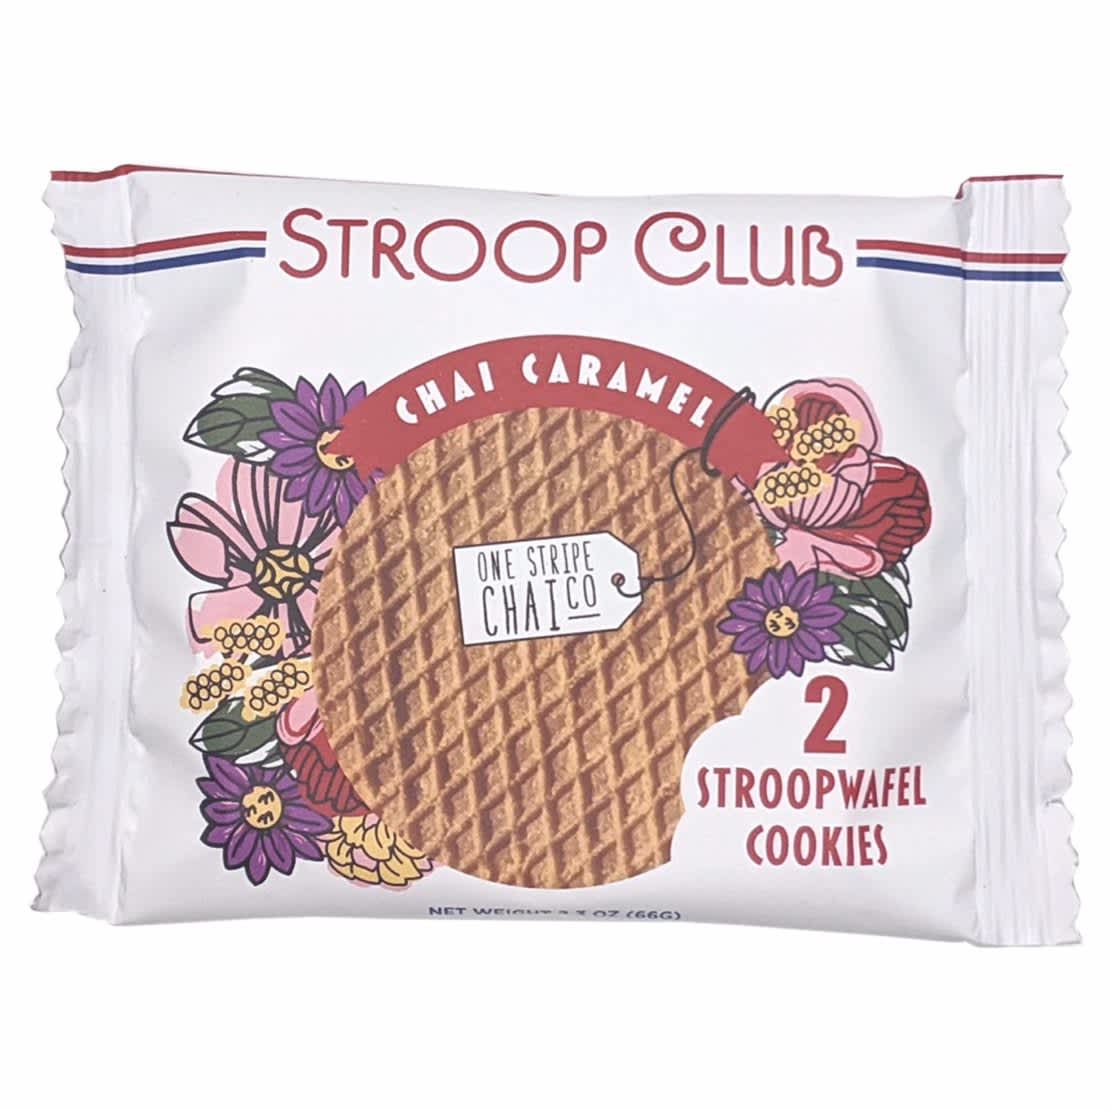 stroop club Stroopwaffles chai caramel